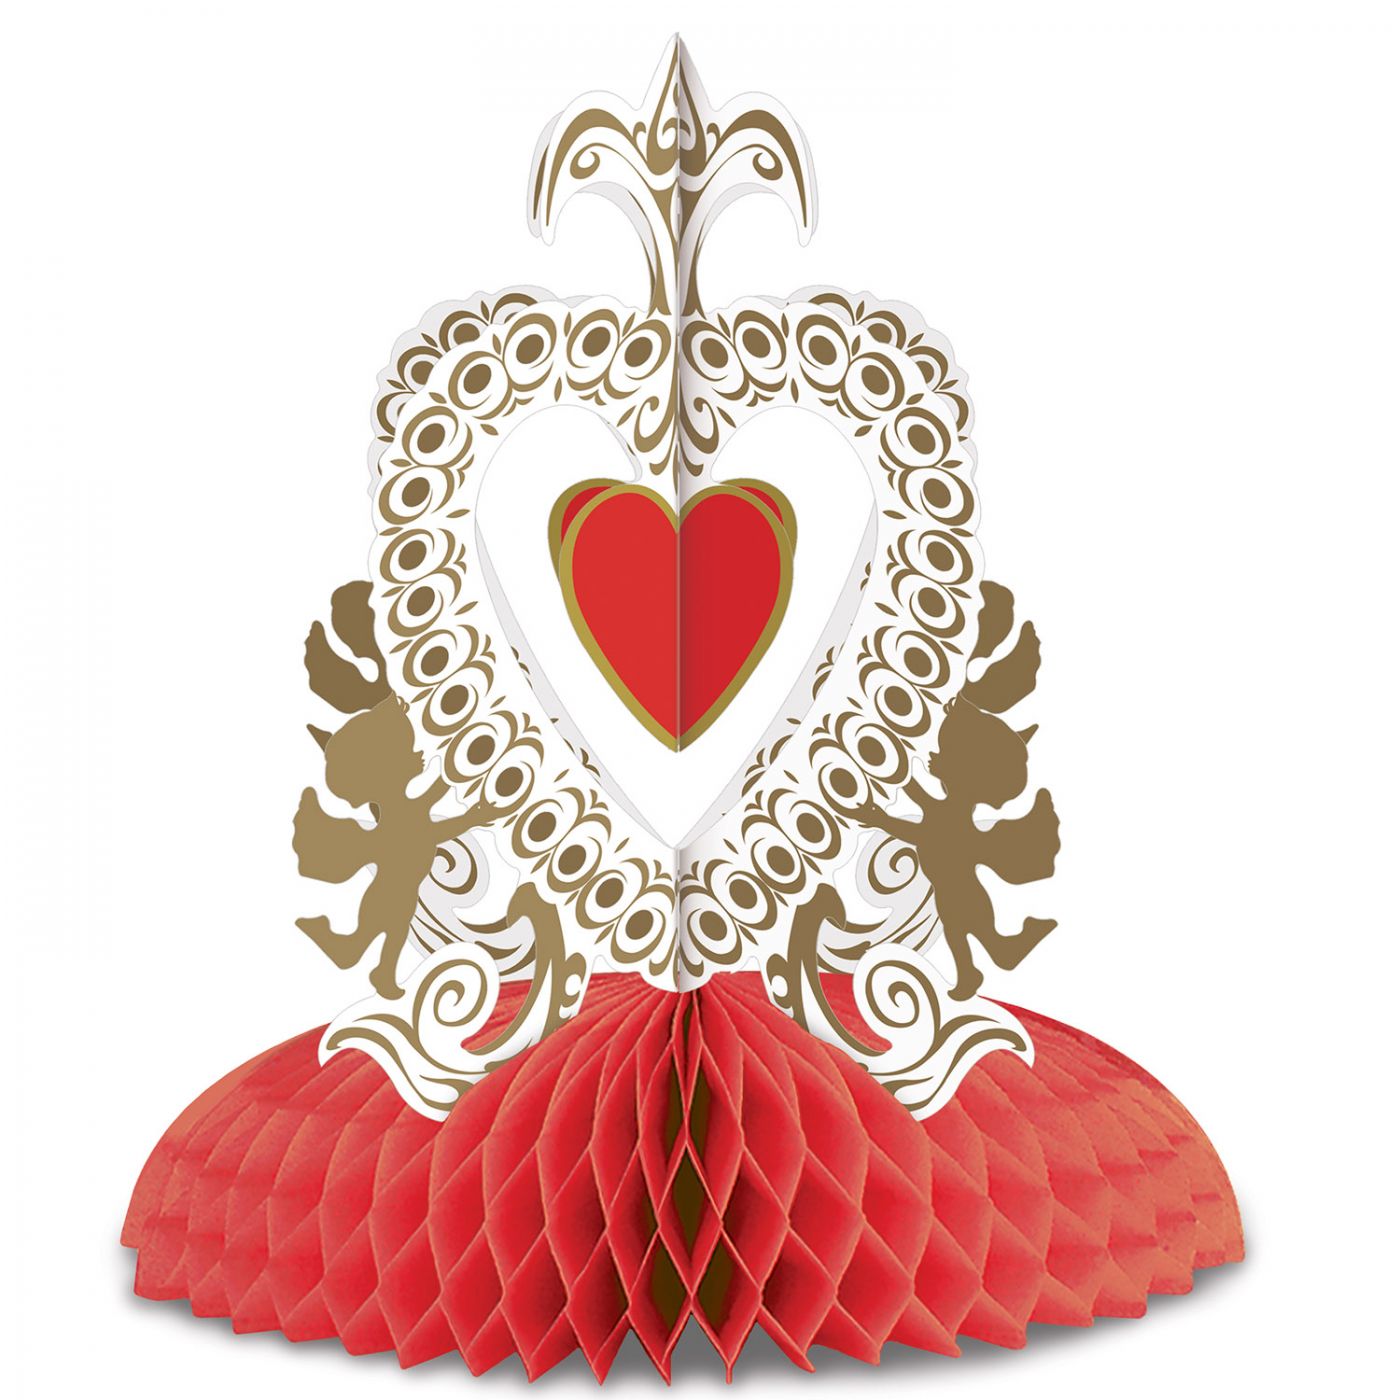 Vintage Valentine Cupid's Heart Ctrpc (12) image